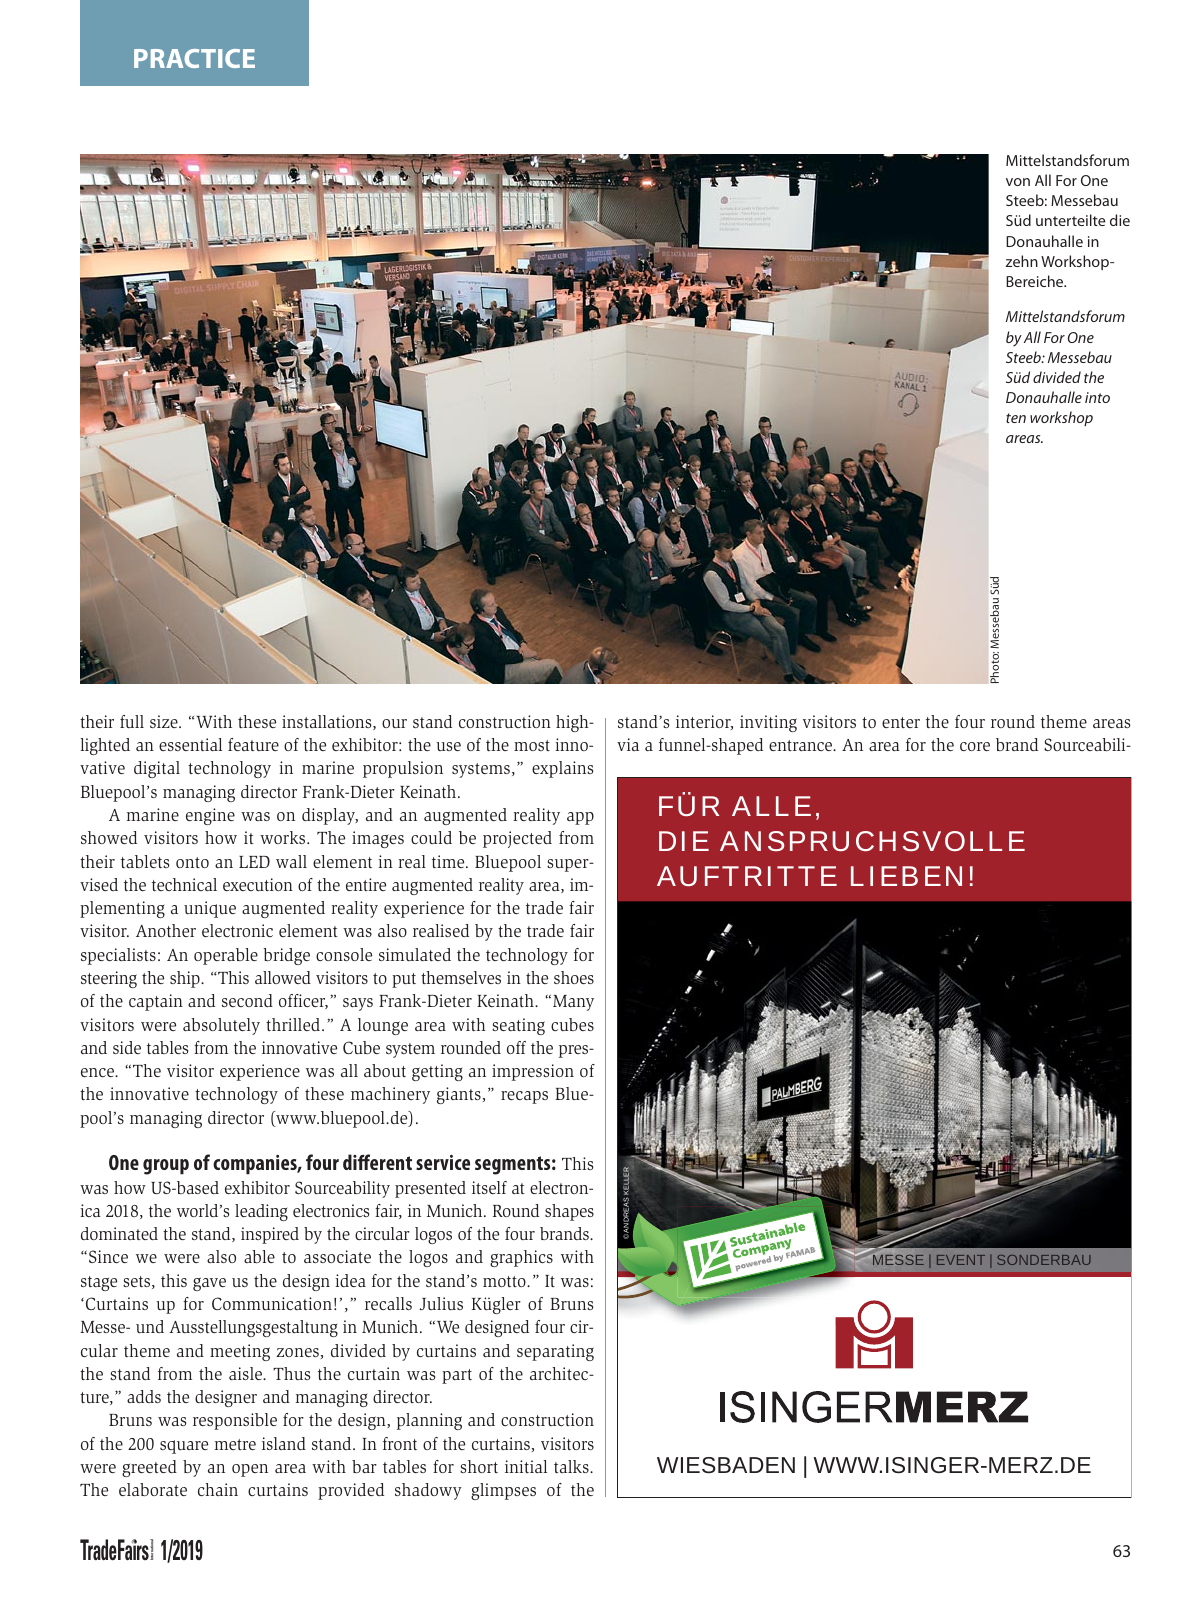 Vorschau TFI Trade-Fairs-International 01/2019 Seite 63